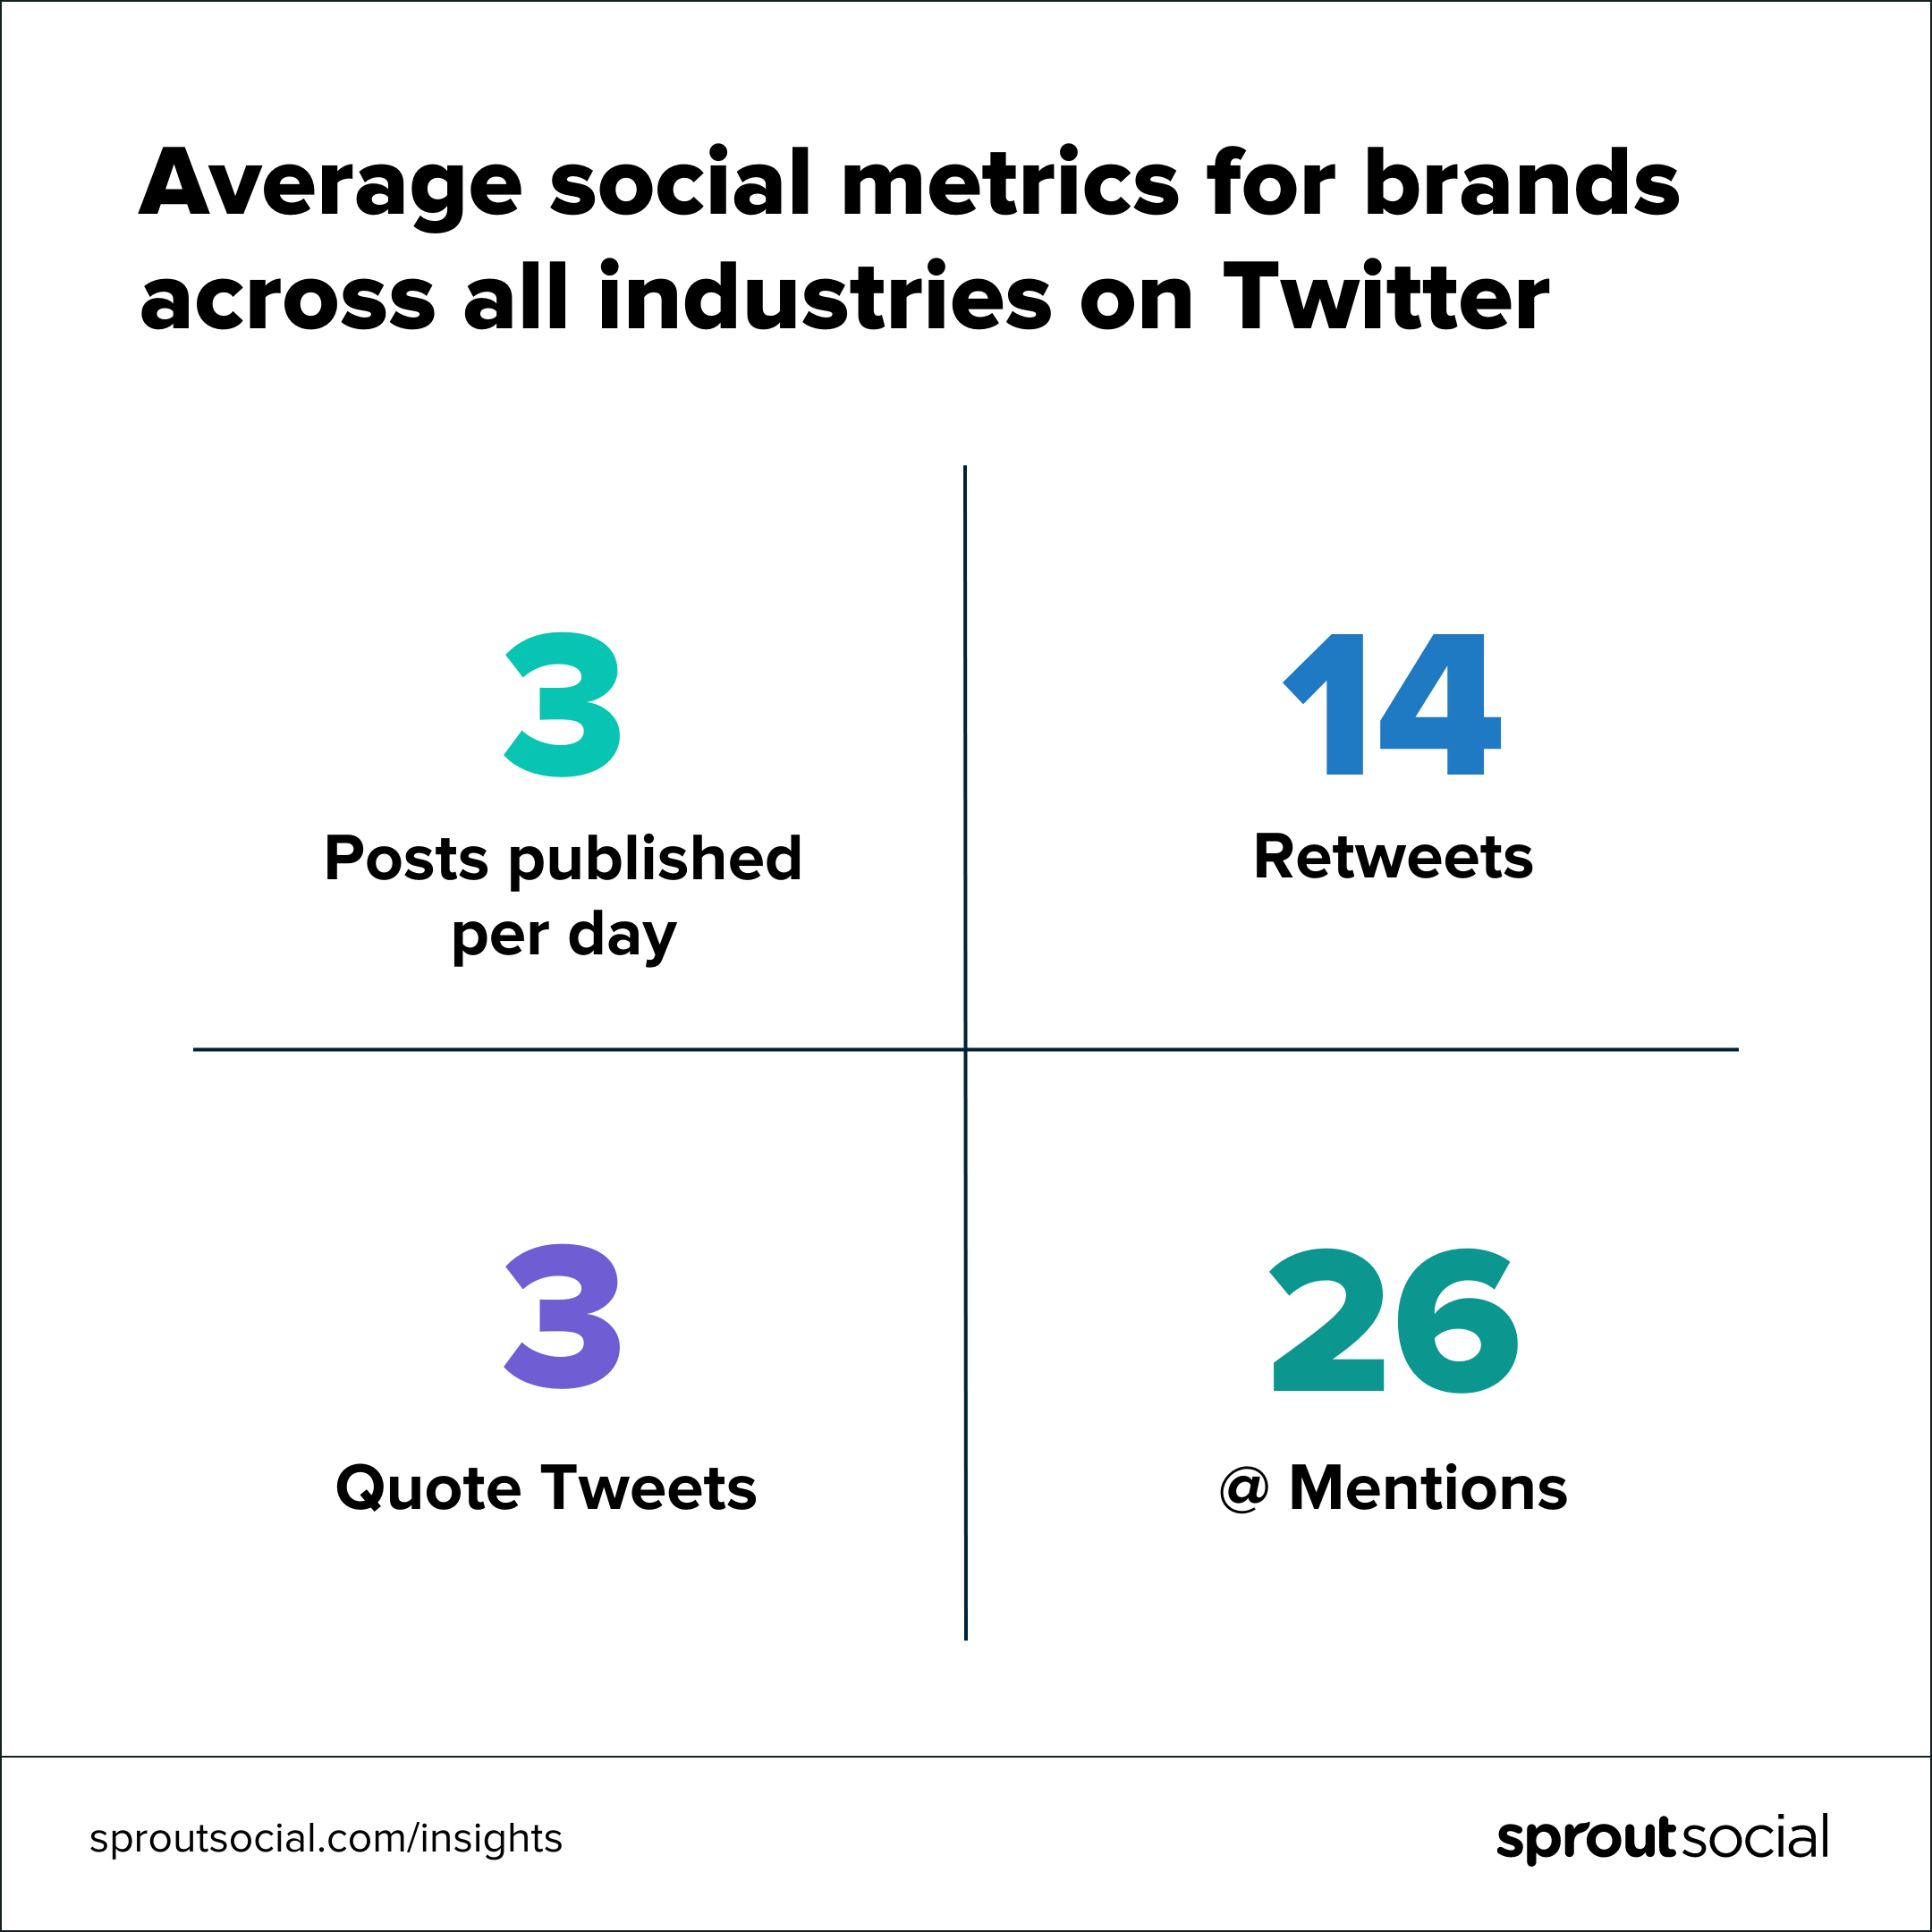 نموداری که میانگین معیارهای اجتماعی را برای برندها در تمام صنایع در توییتر نشان می دهد.  به طور متوسط، برندها روزانه 3 پست منتشر می کنند.  آنها روزانه 14 ریتوییت، 3 توییت نقل قول و 26 منشن @ دریافت می کنند.